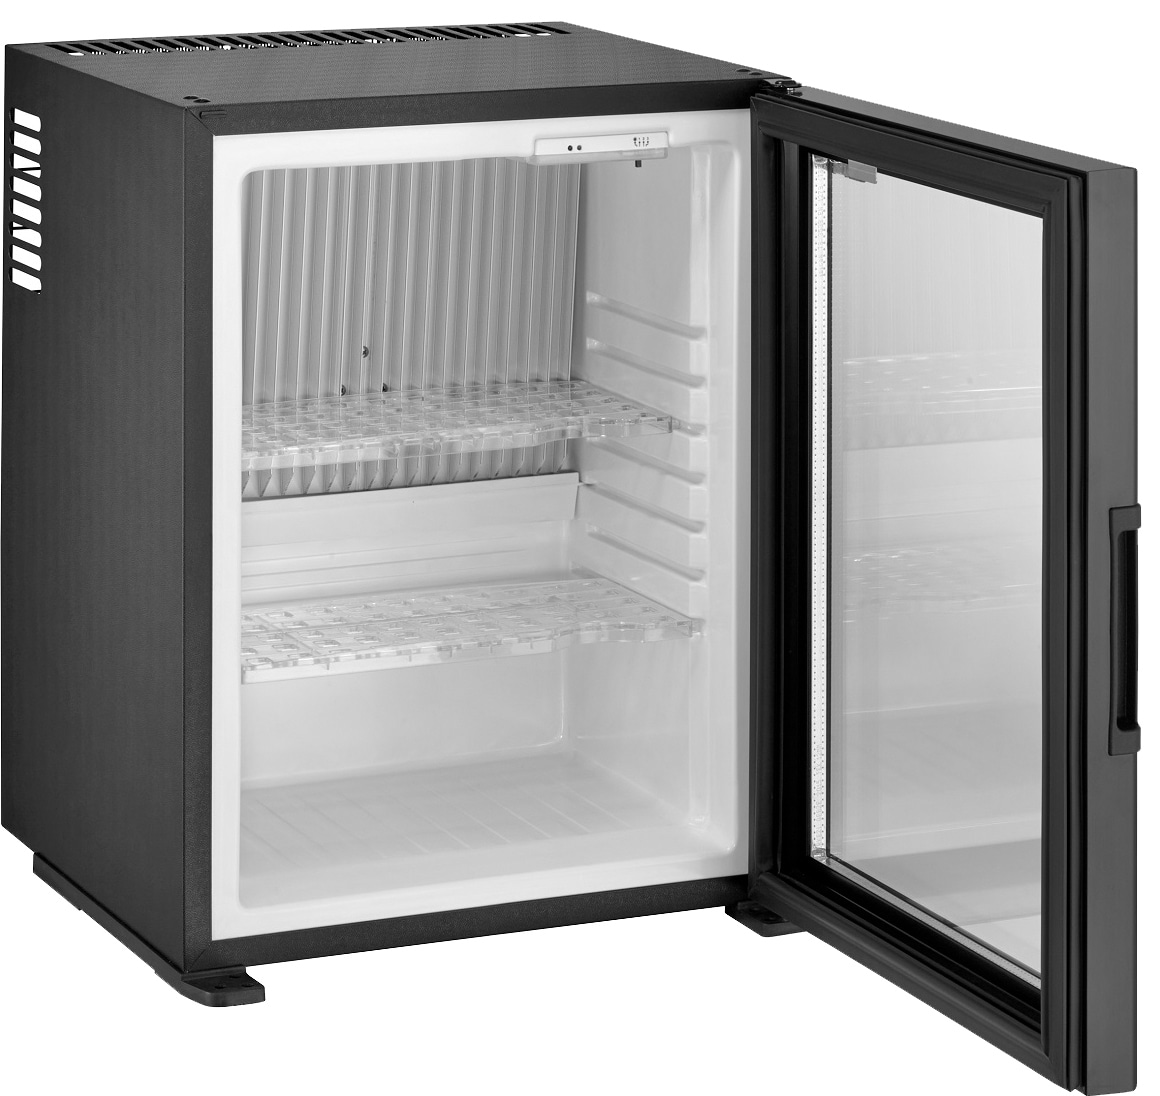 Find det bedste Mini Køleskab i 2023 blandt 80 mini køleskabe- opdateret  November 2023